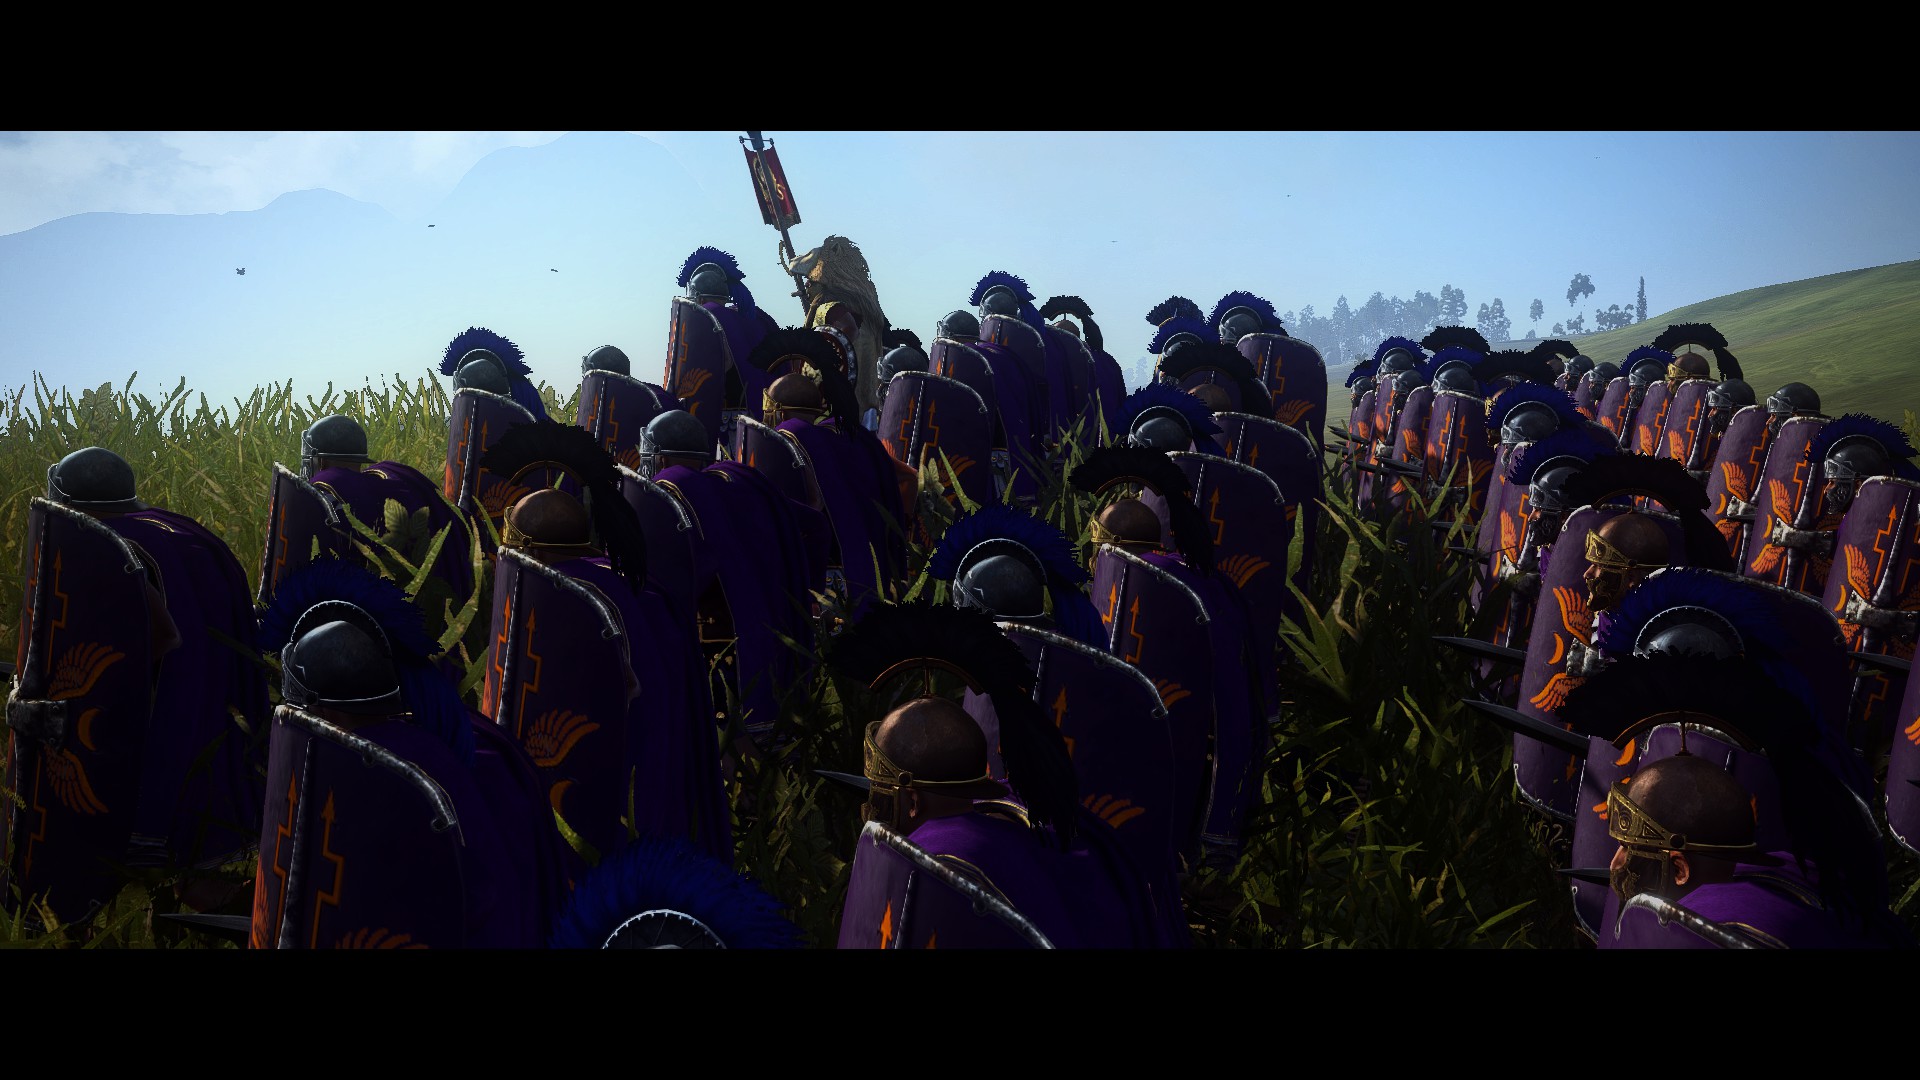 Purpura Custodes by Kaatun